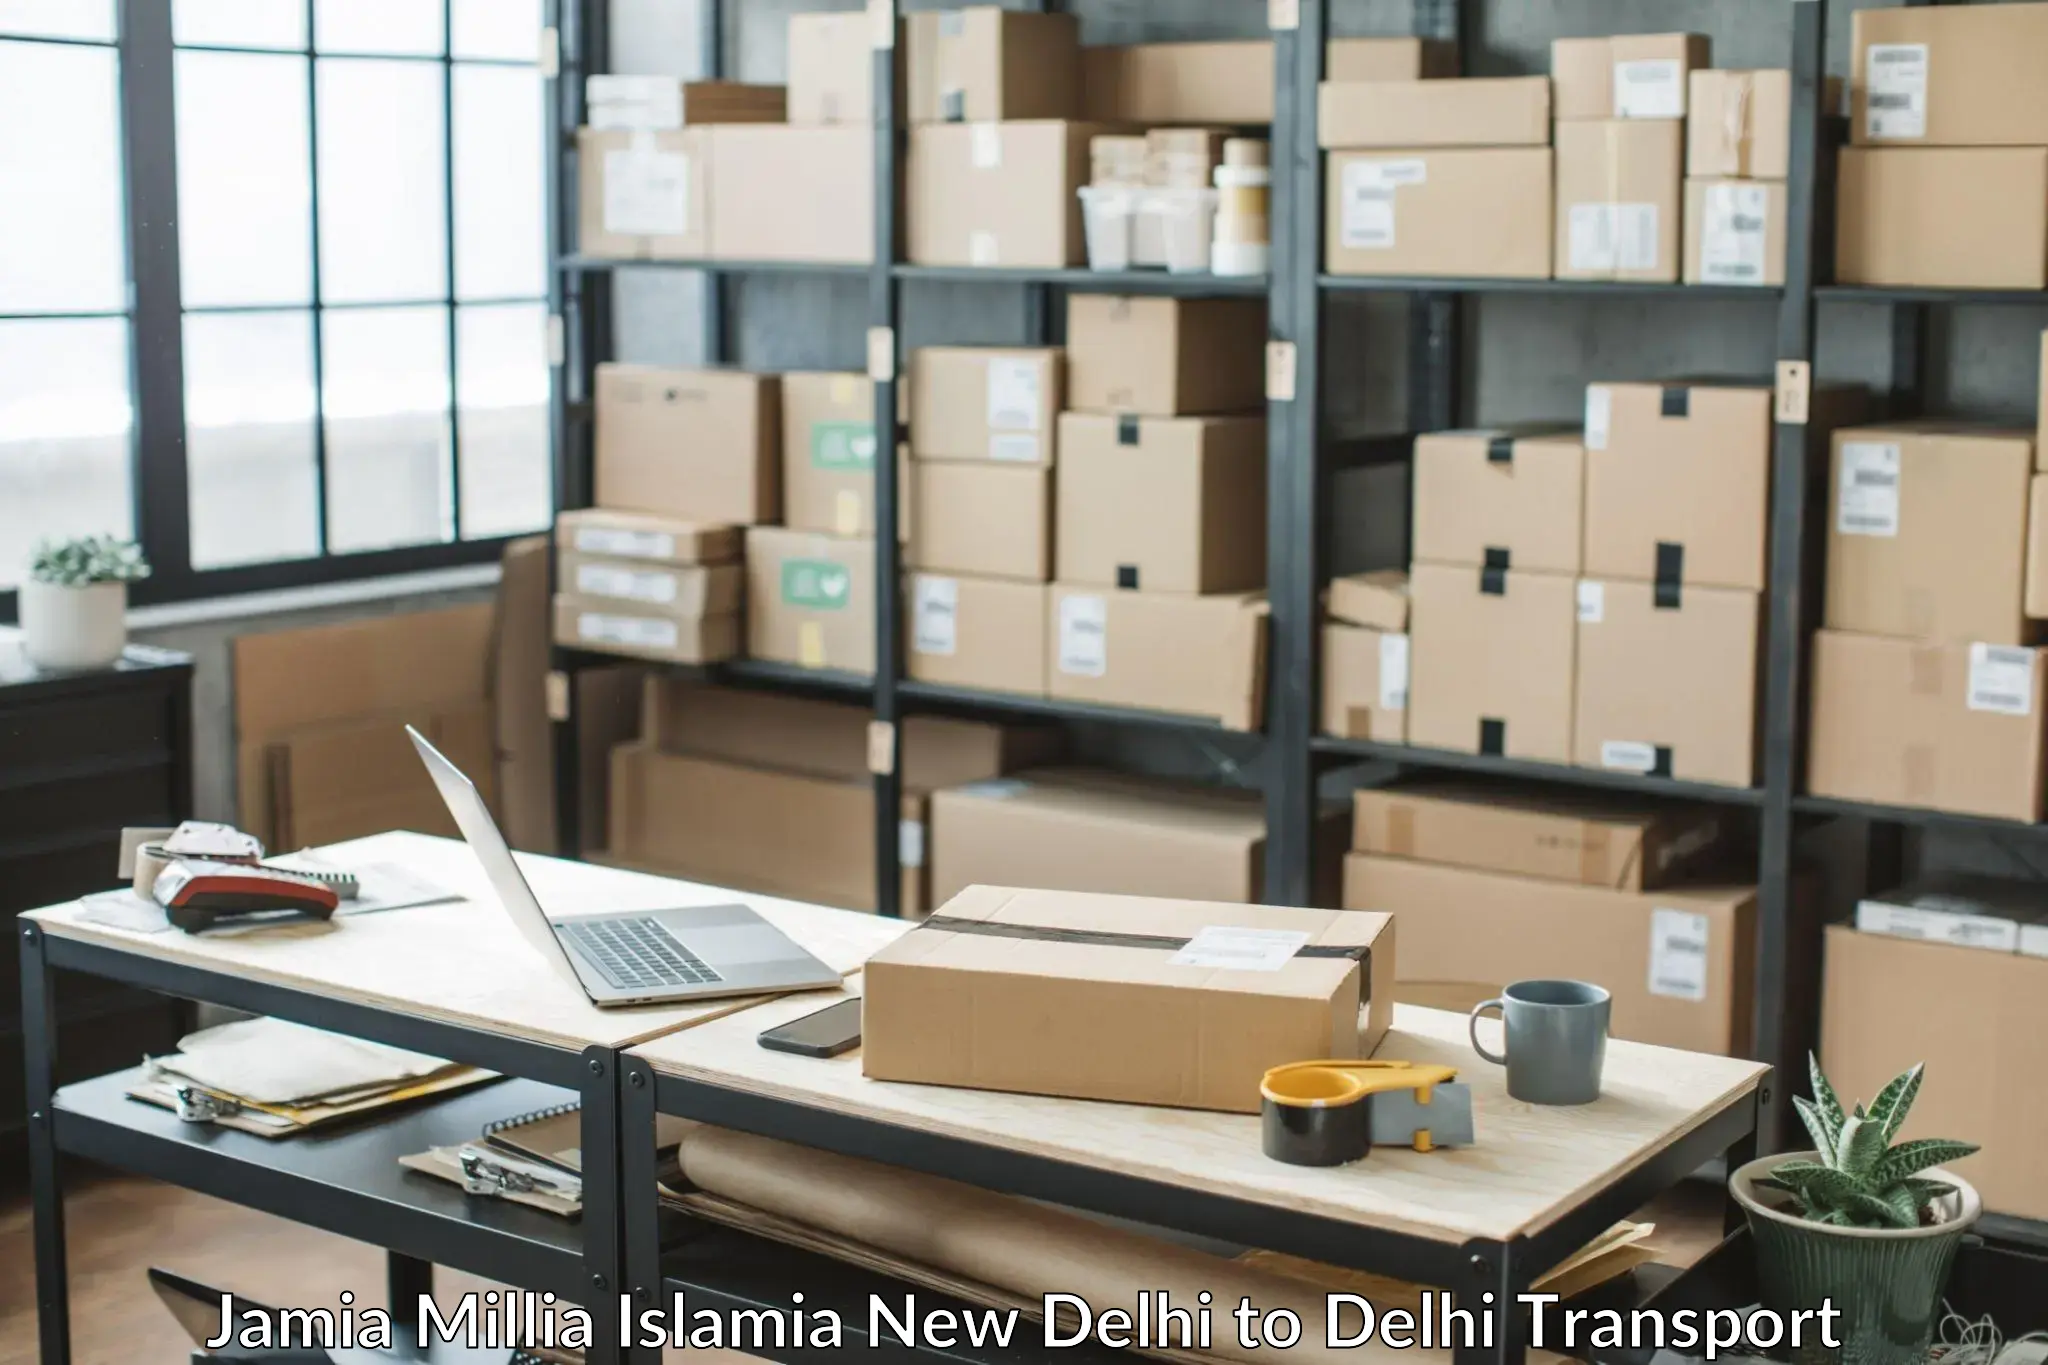 Container transport service Jamia Millia Islamia New Delhi to IIT Delhi